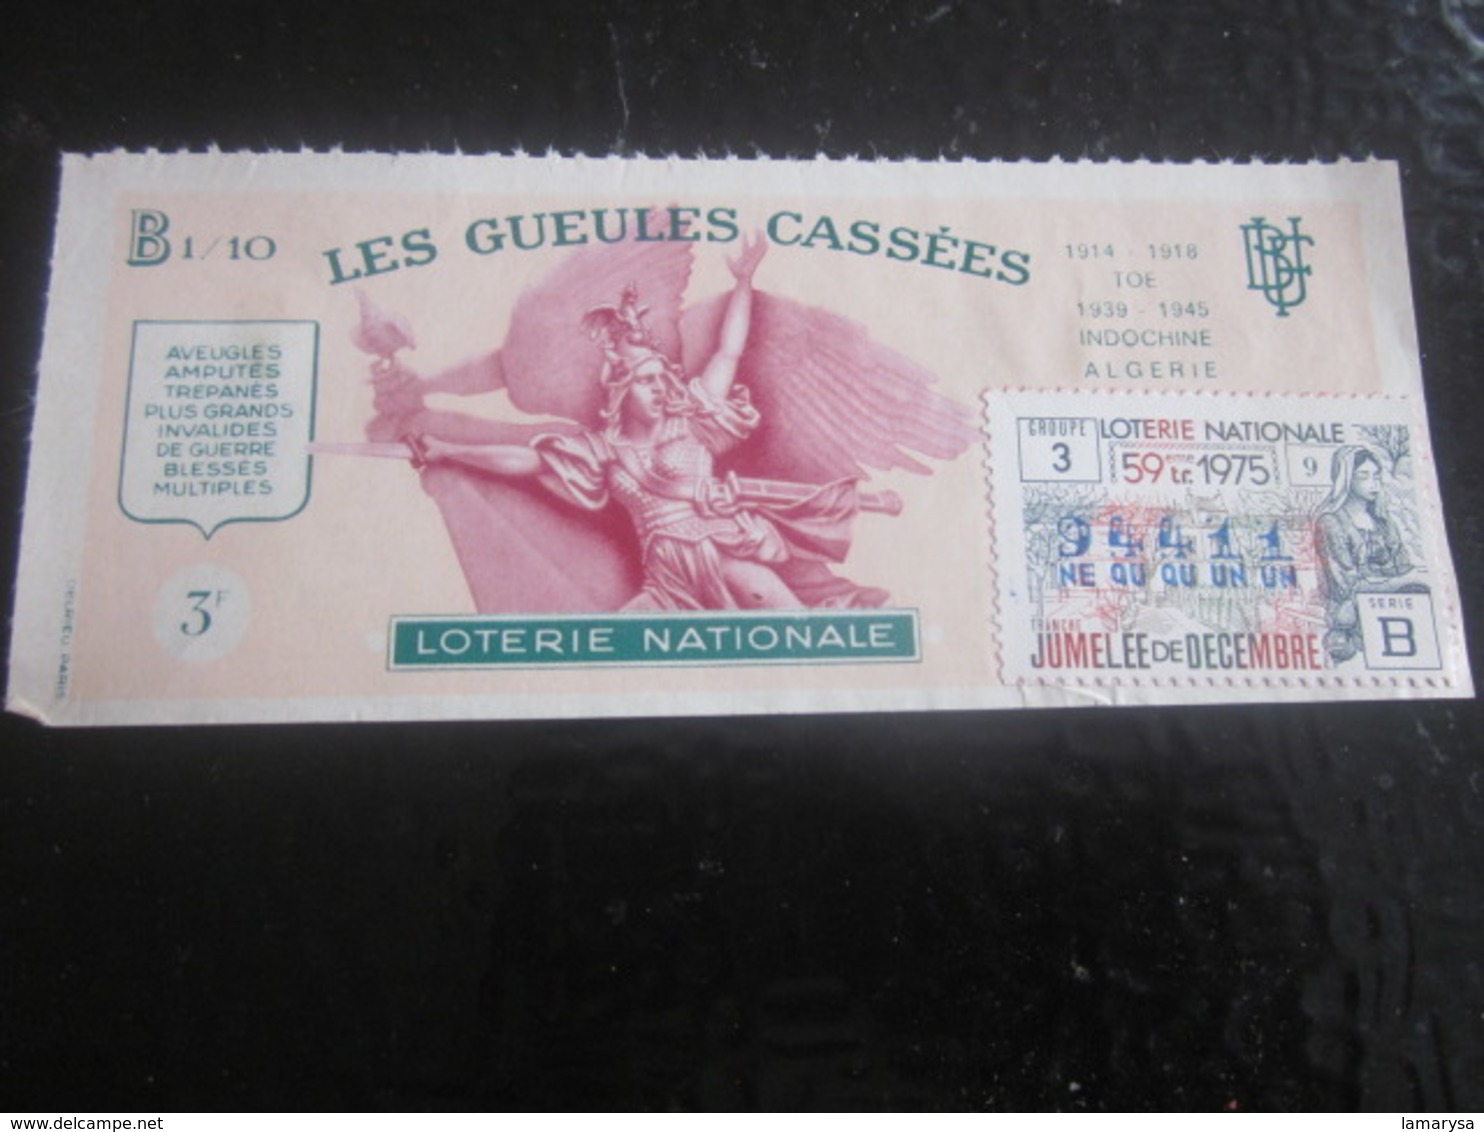 Billet Loterie Nationale Française Les Gueules Cassées Jumelée Décembr 1975 Vignette Taille Douce Lottery-Scratch-Ticket - Billets De Loterie